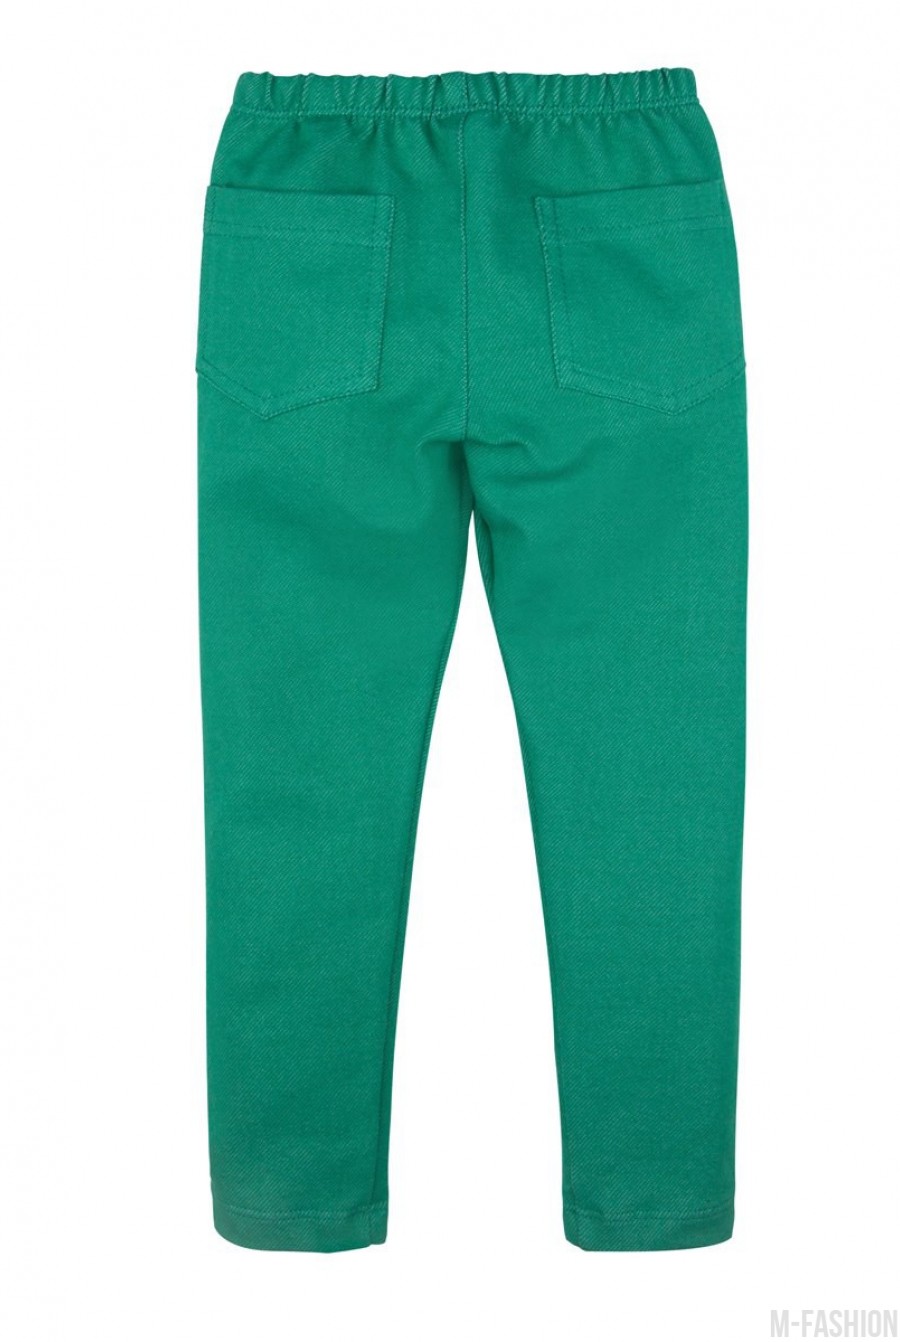 Зеленые джинсовые леггинсы на резинке- Фото 4